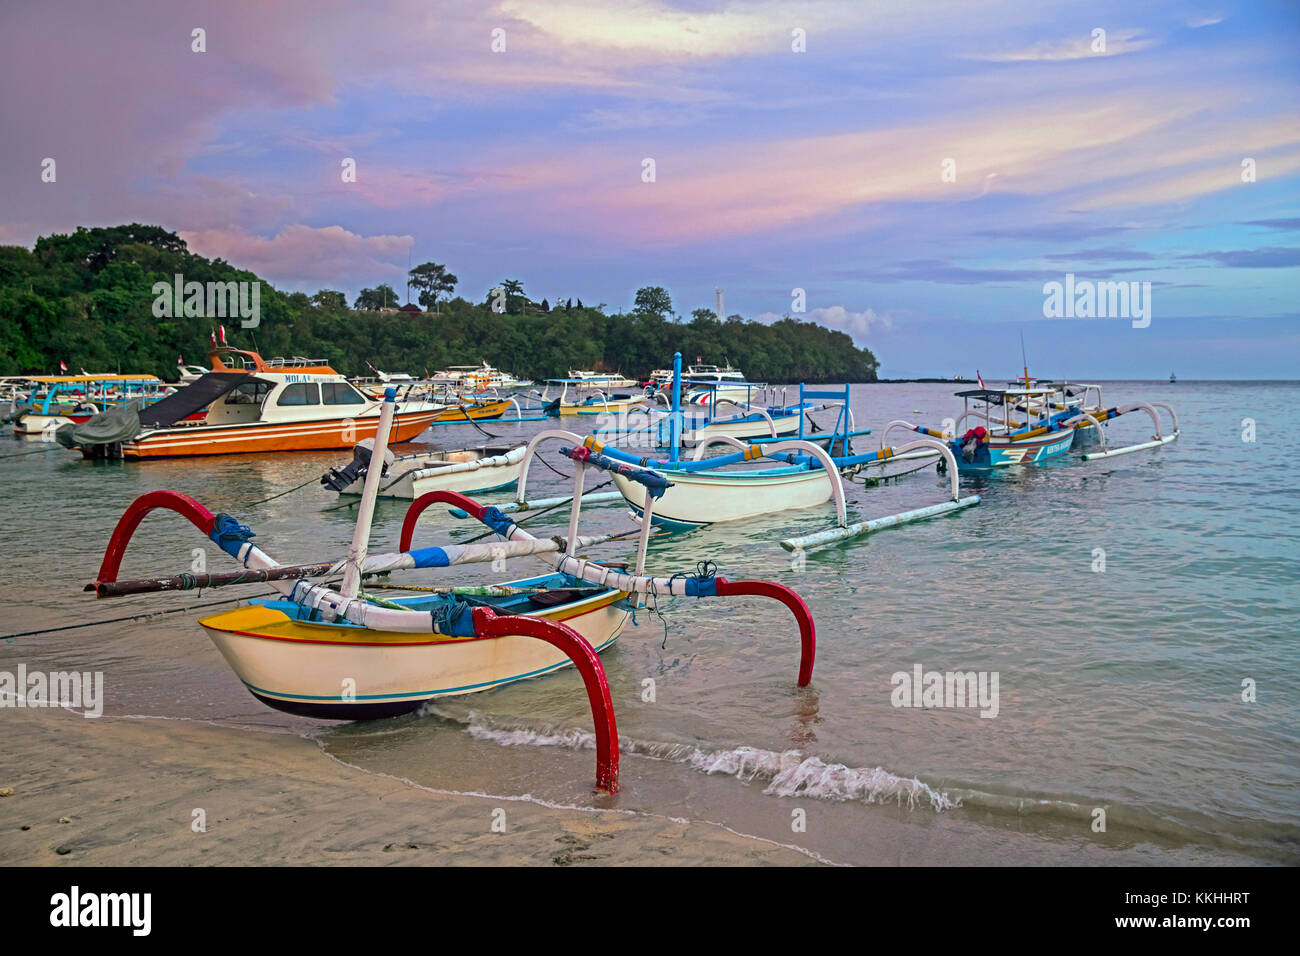 Outrigger traditionnels bateaux de pêche sur la plage de Padang Padang Bai / / padangbai bay au coucher du soleil sur l'île de Bali, Indonésie Banque D'Images